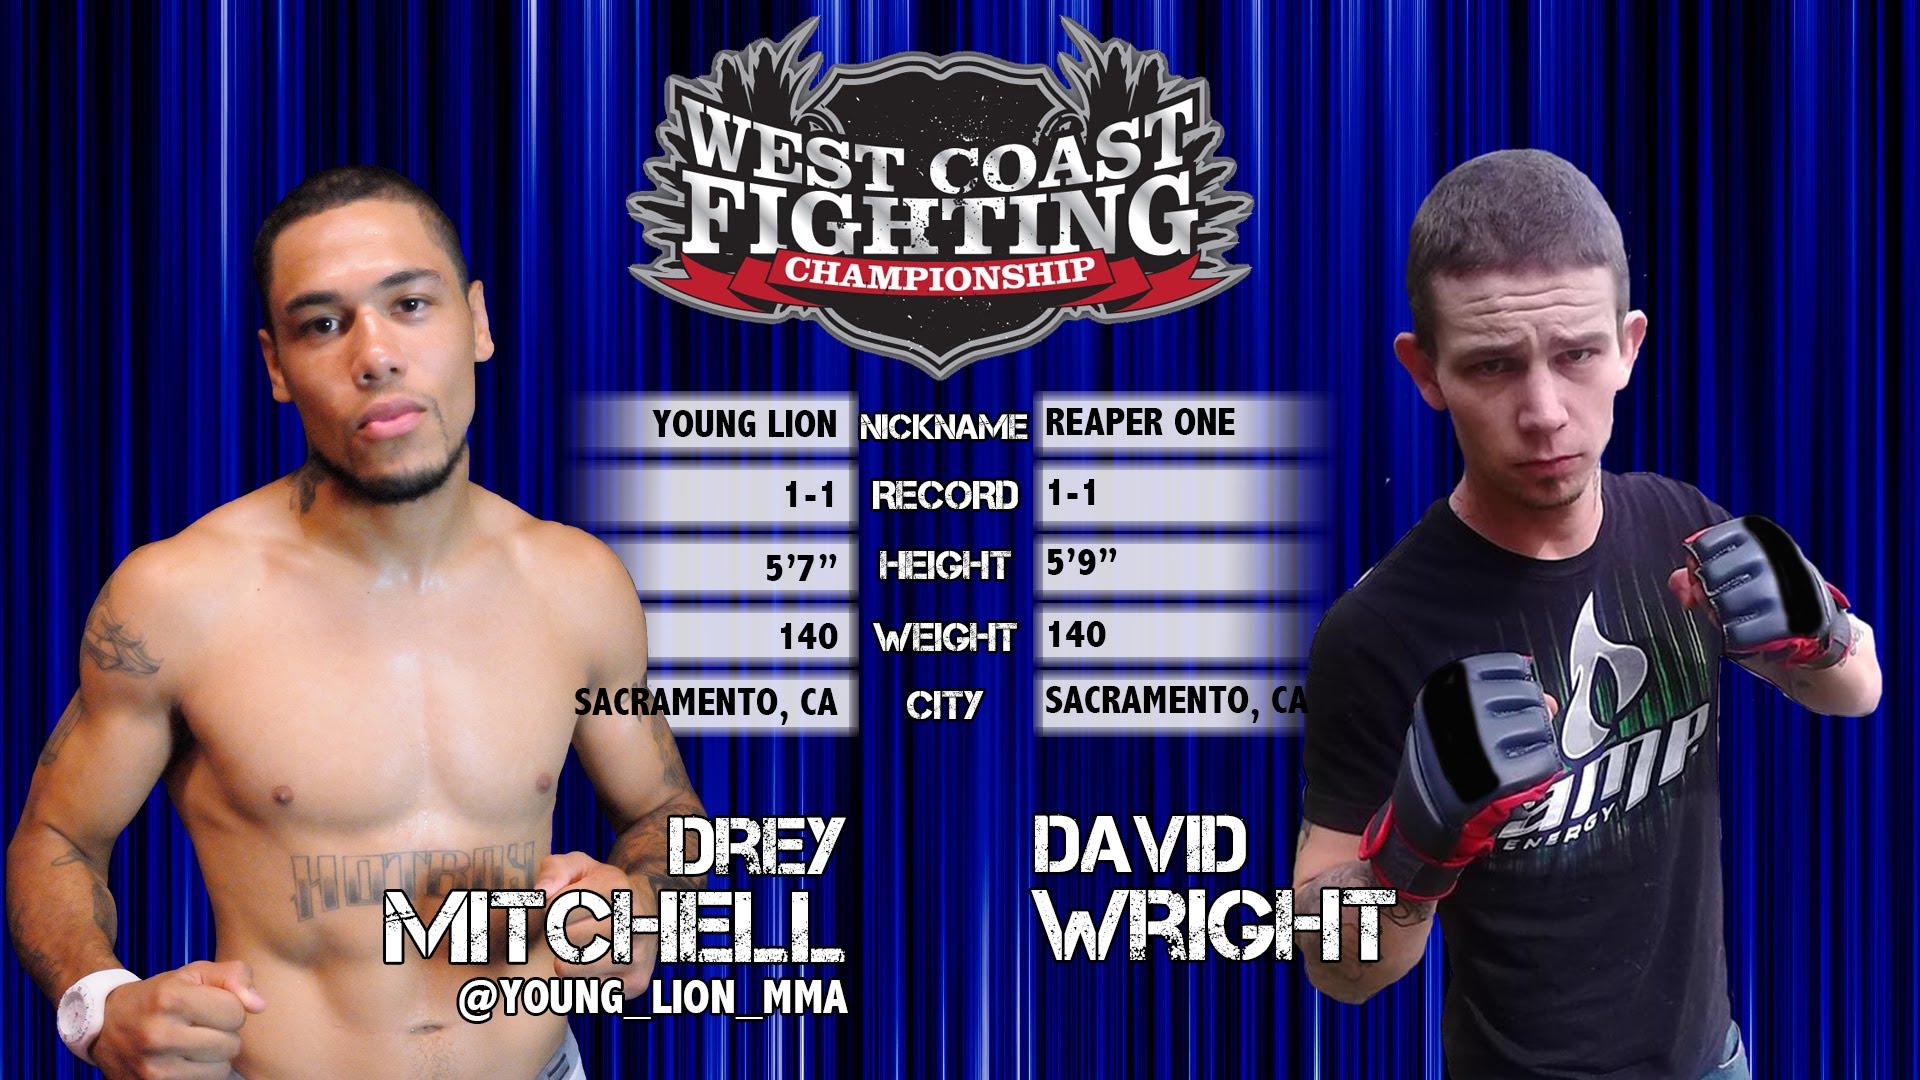 WFC 9 - Drey Mitchell vs. David Wright Full Fight MMA Video1920 x 1080